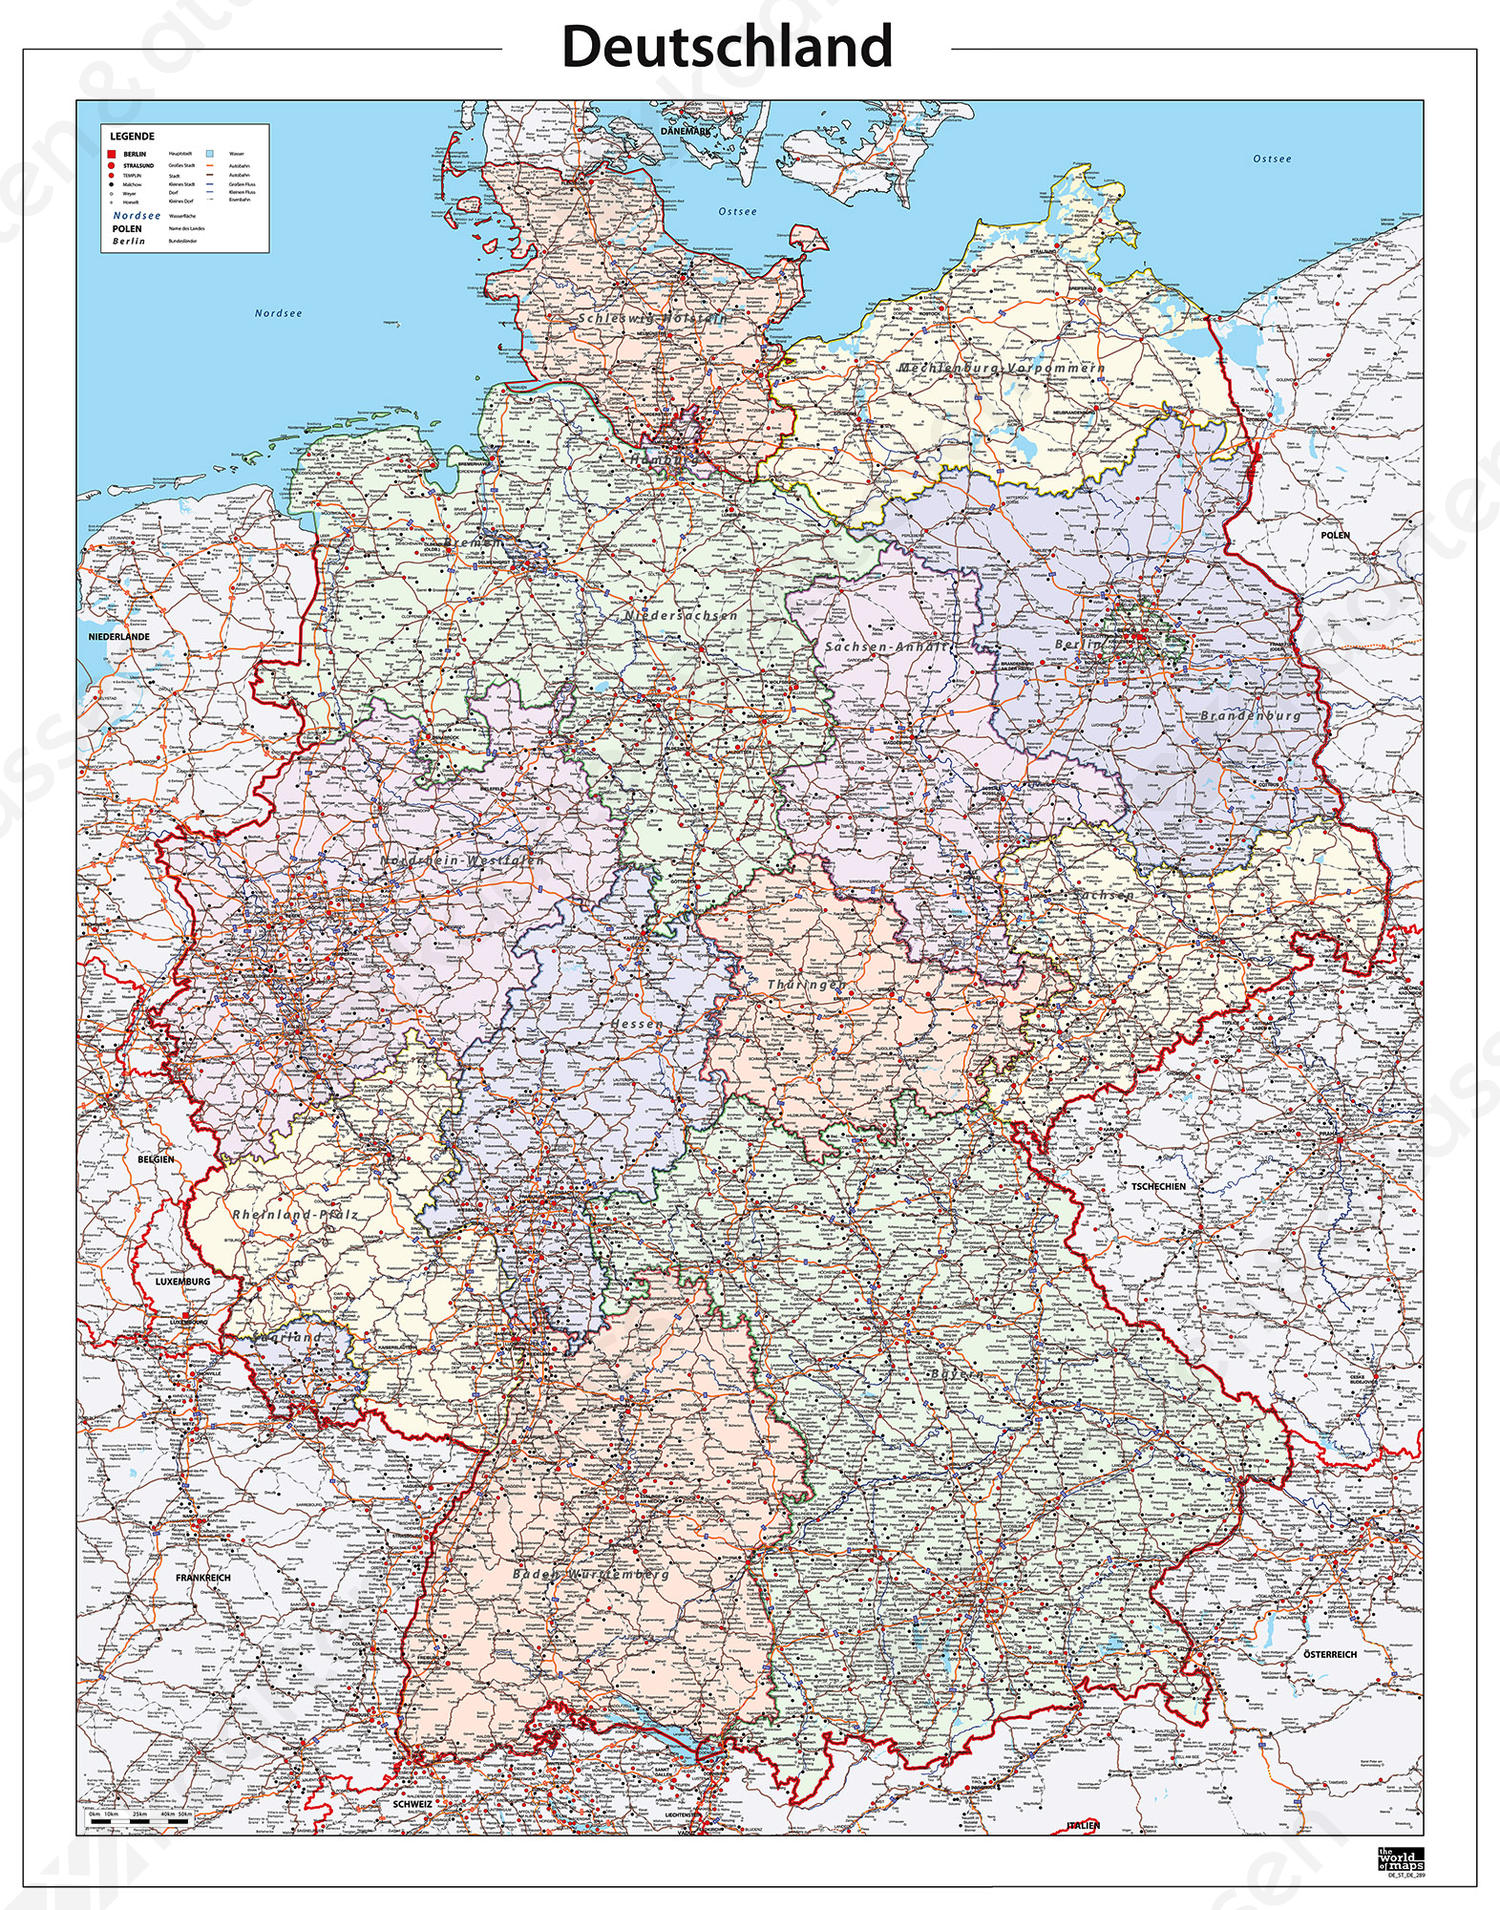 Duitsland kaart met contouren